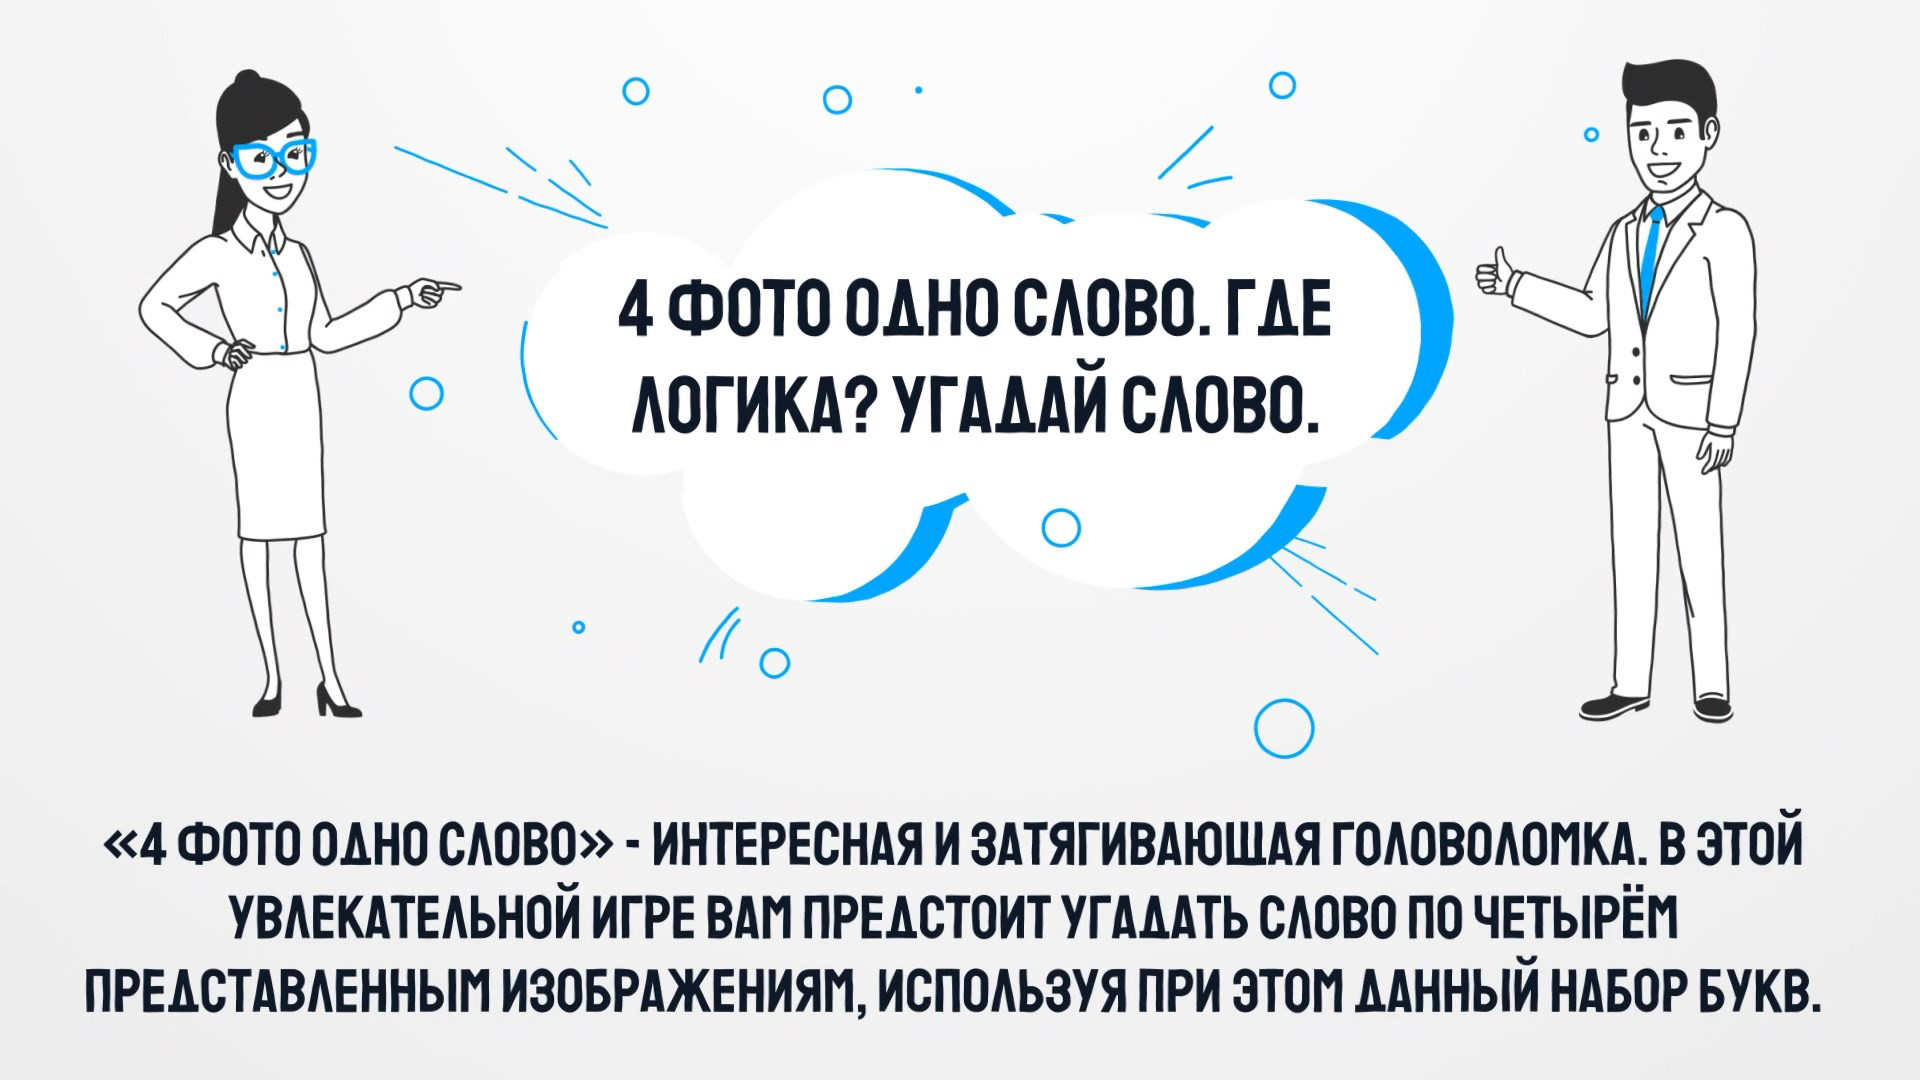 Что за слово ответы на игру в Одноклассниках, ВКонтакте: 6 букв